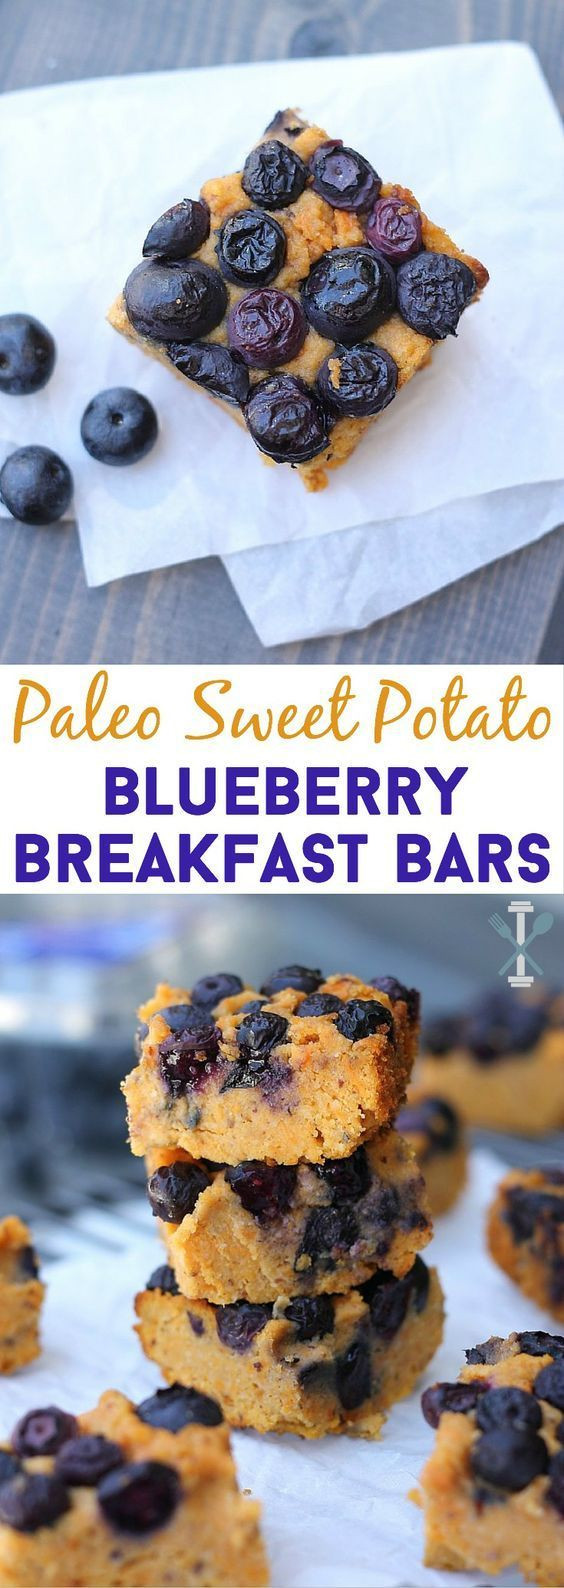 Paleo Breakfast Bar Recipes
 Paleo Sweet Potato Blueberry Breakfast Bars